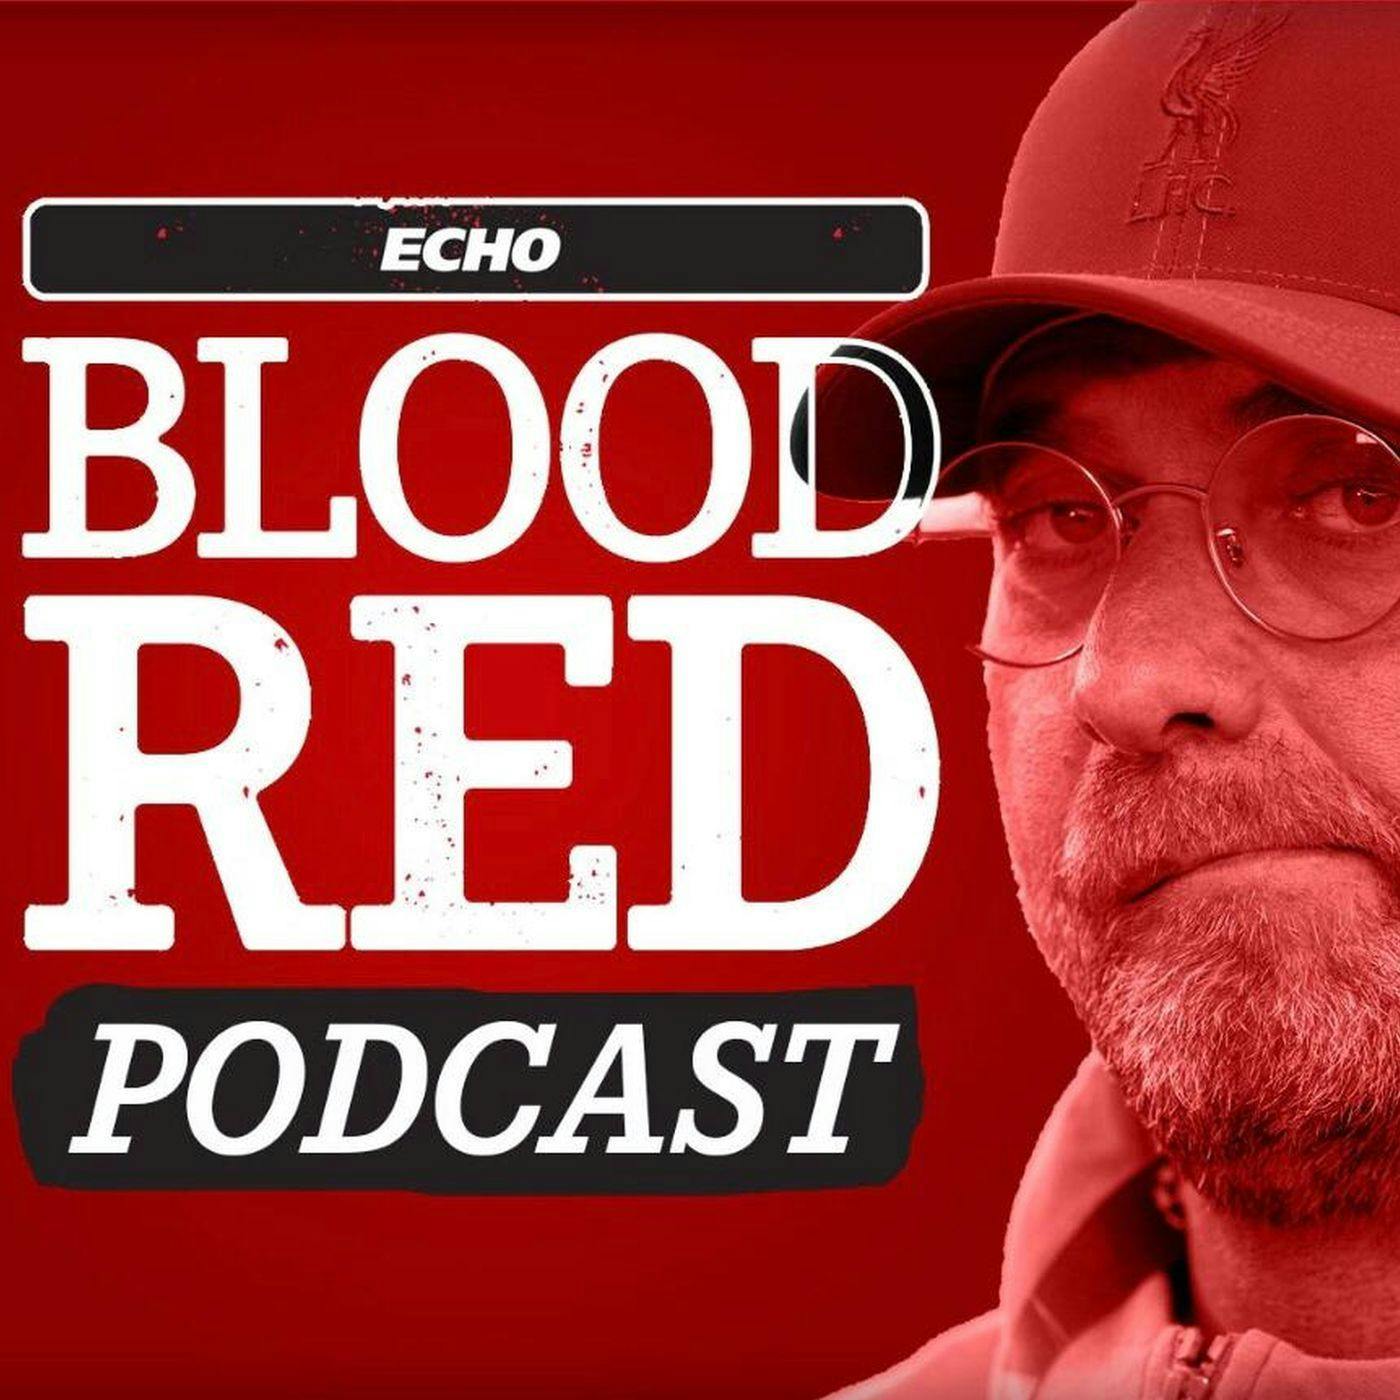 Blood Red: Curious Keita & misfiring Mane give Klopp conundrum ahead of season-defining week